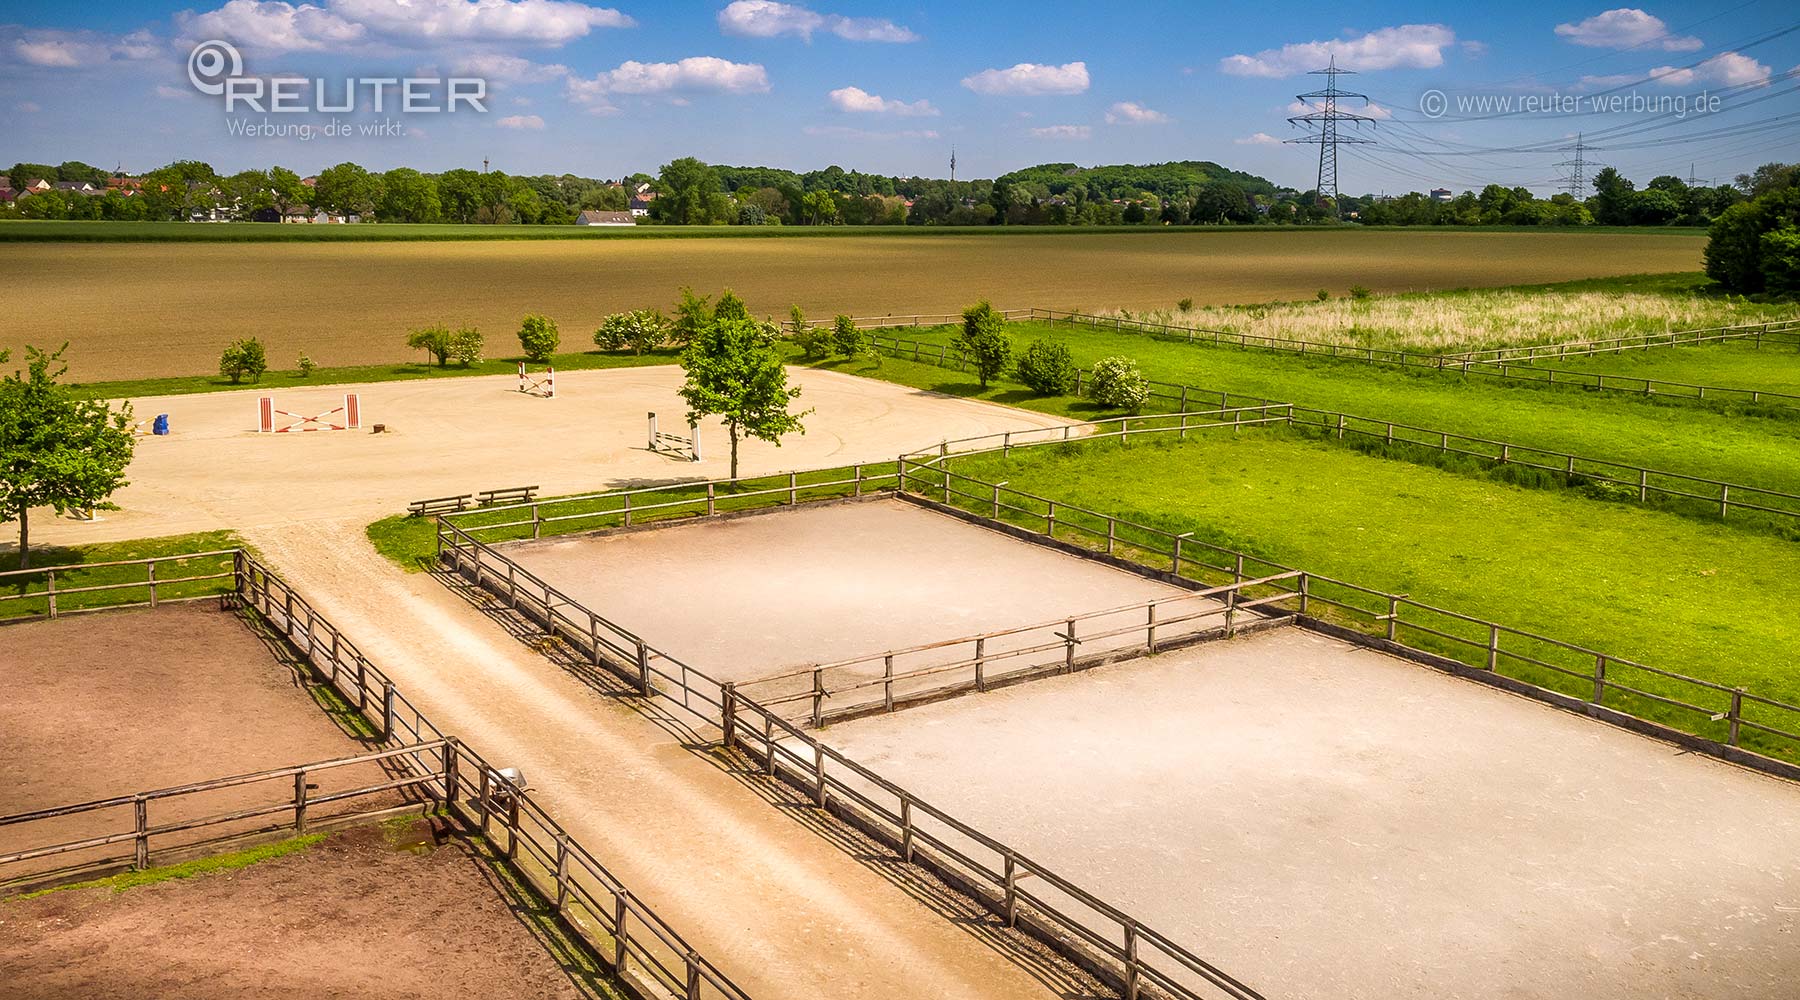 Foto: Aerials / Luftbildaufnahmen von REUTER - Beispiel: Paddock- & Springplatz, Grünflächen & Weiden, Reitanlage OEHMCHEN, Dortmund - Shooting vor Ort aus der Luft